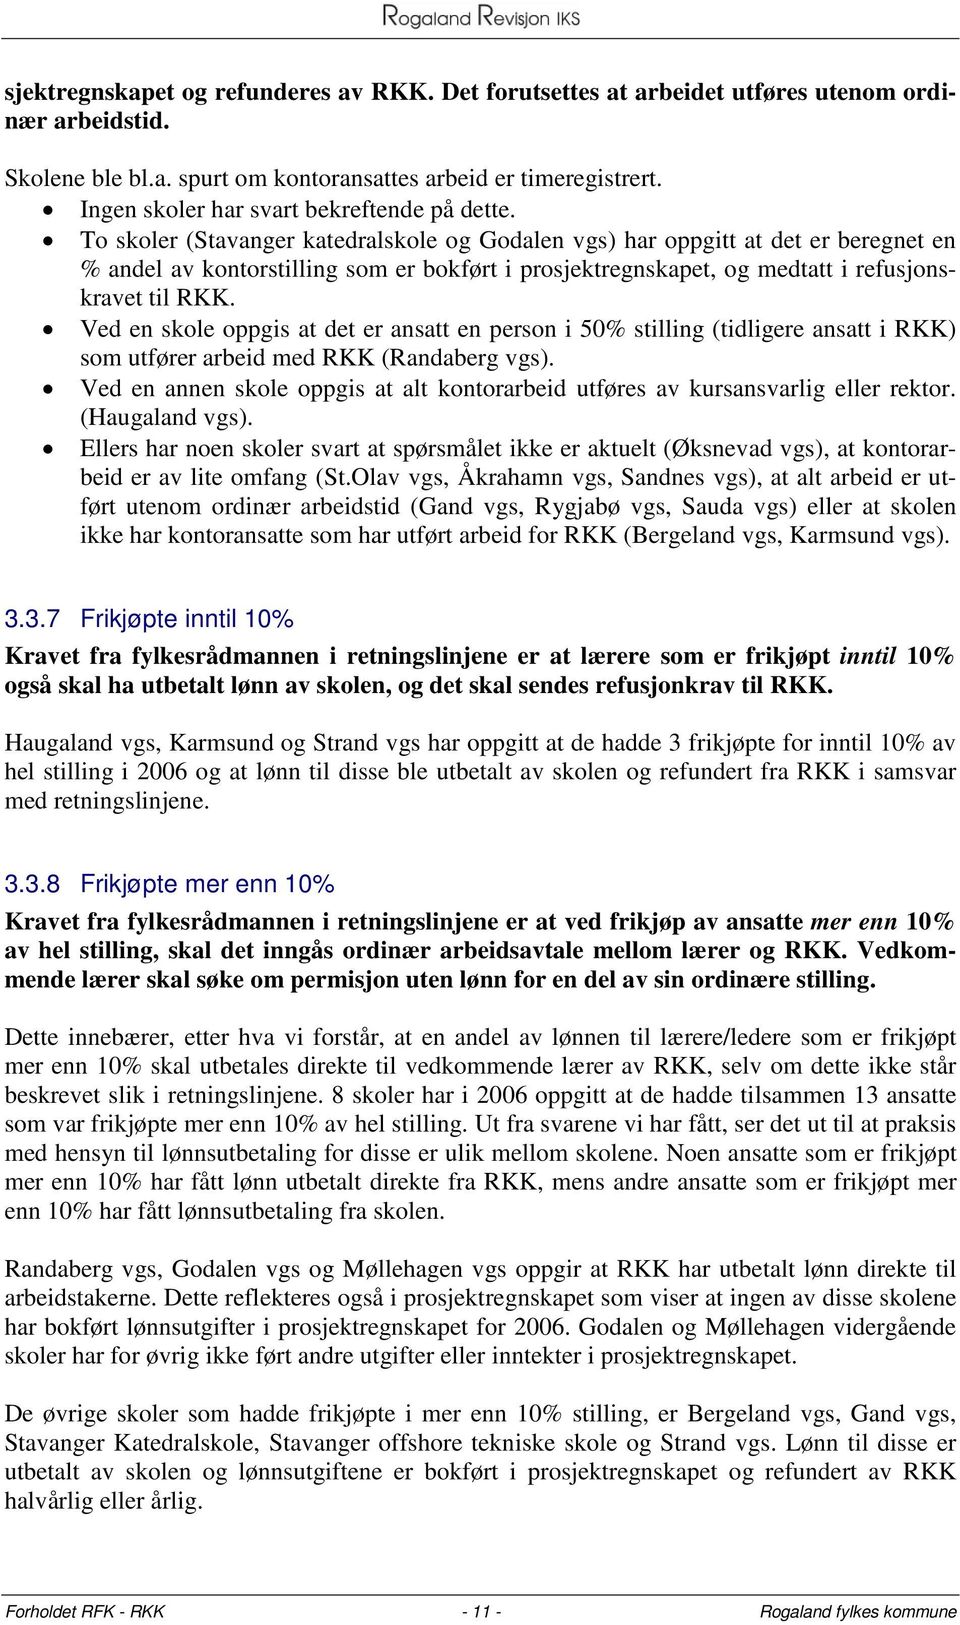 To skoler (Stavanger katedralskole og Godalen vgs) har oppgitt at det er beregnet en % andel av kontorstilling som er bokført i prosjektregnskapet, og medtatt i refusjonskravet til RKK.